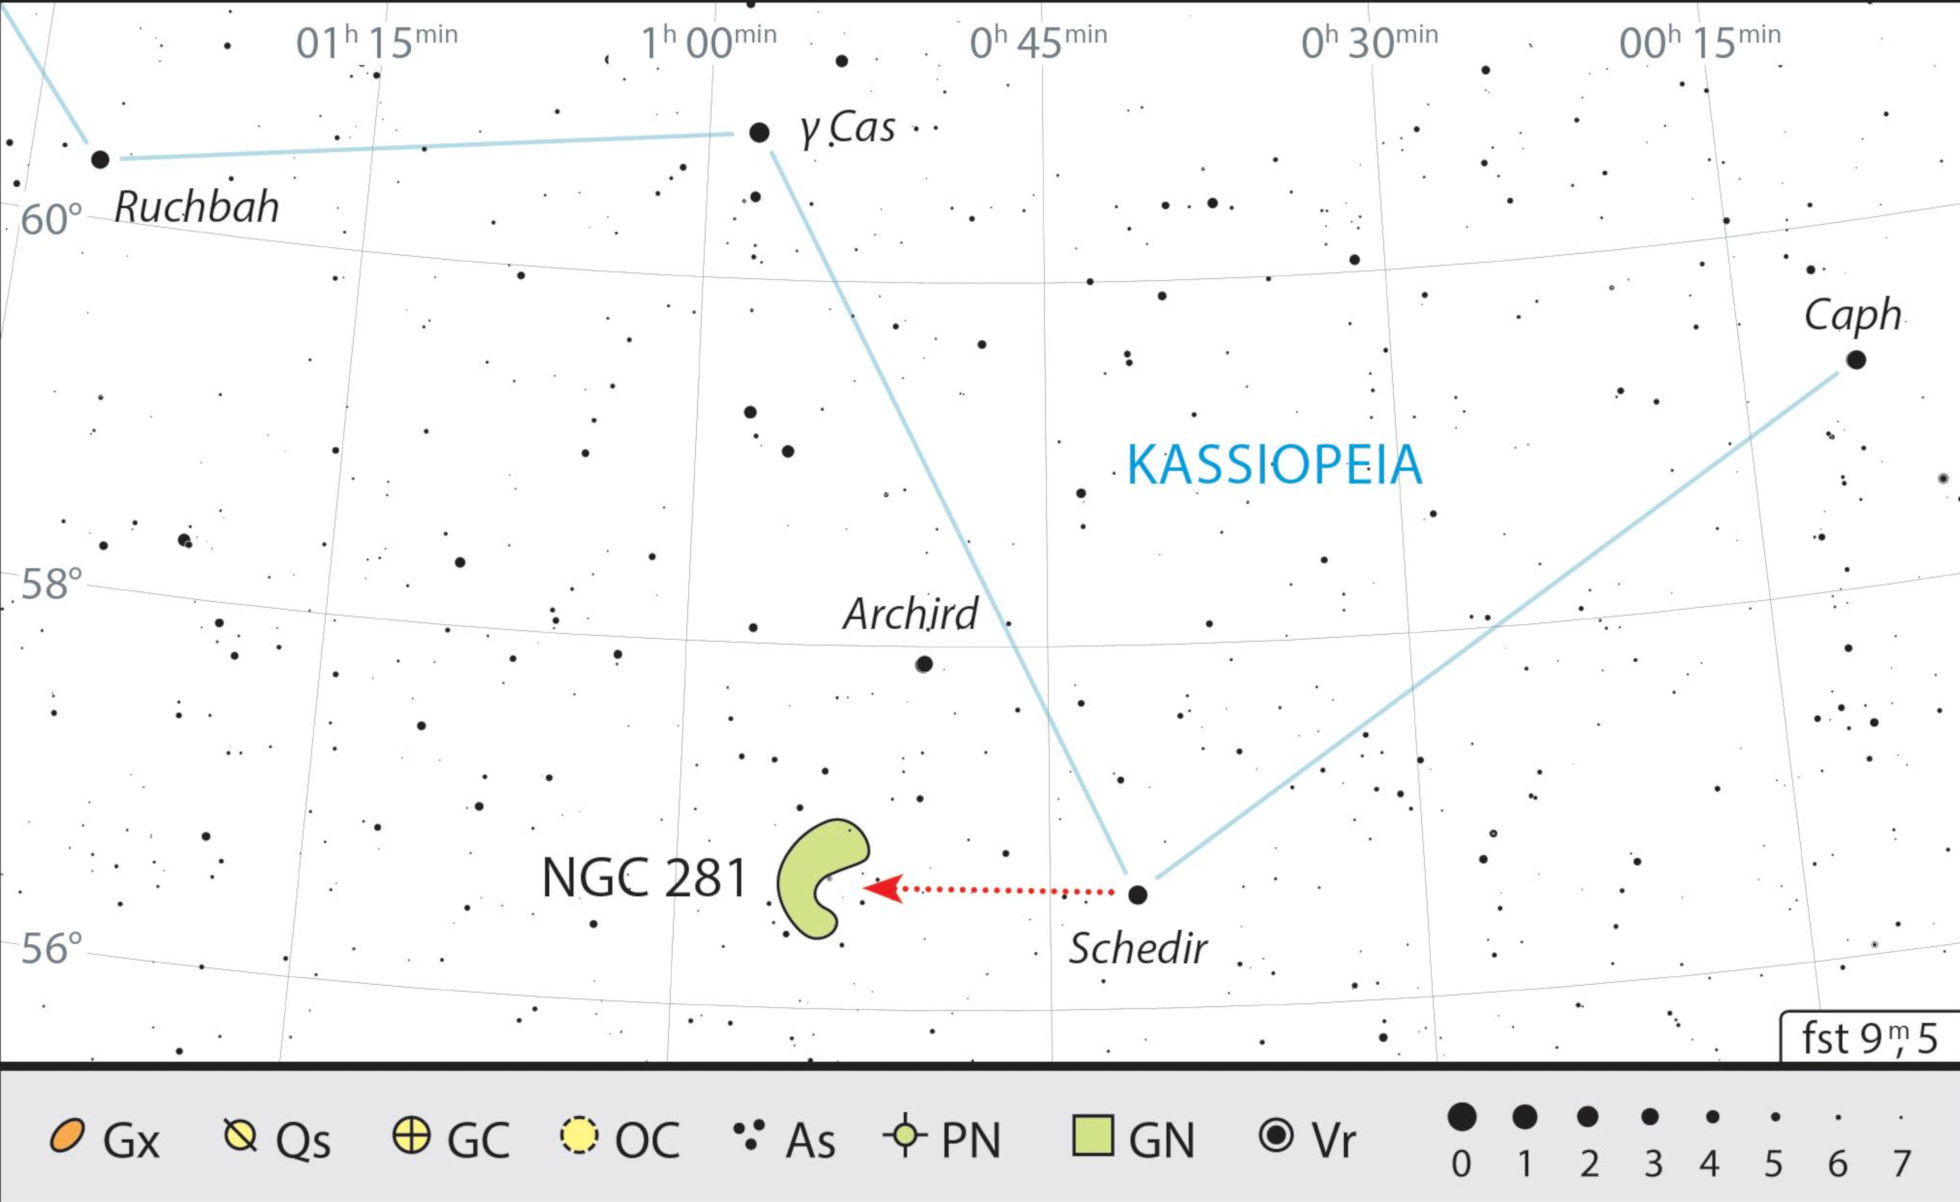 Der Pacman-Nebel steht ganz in der Nähe von α Cas (Schedir), Cassiopeias Hauptstern. J. Scholten